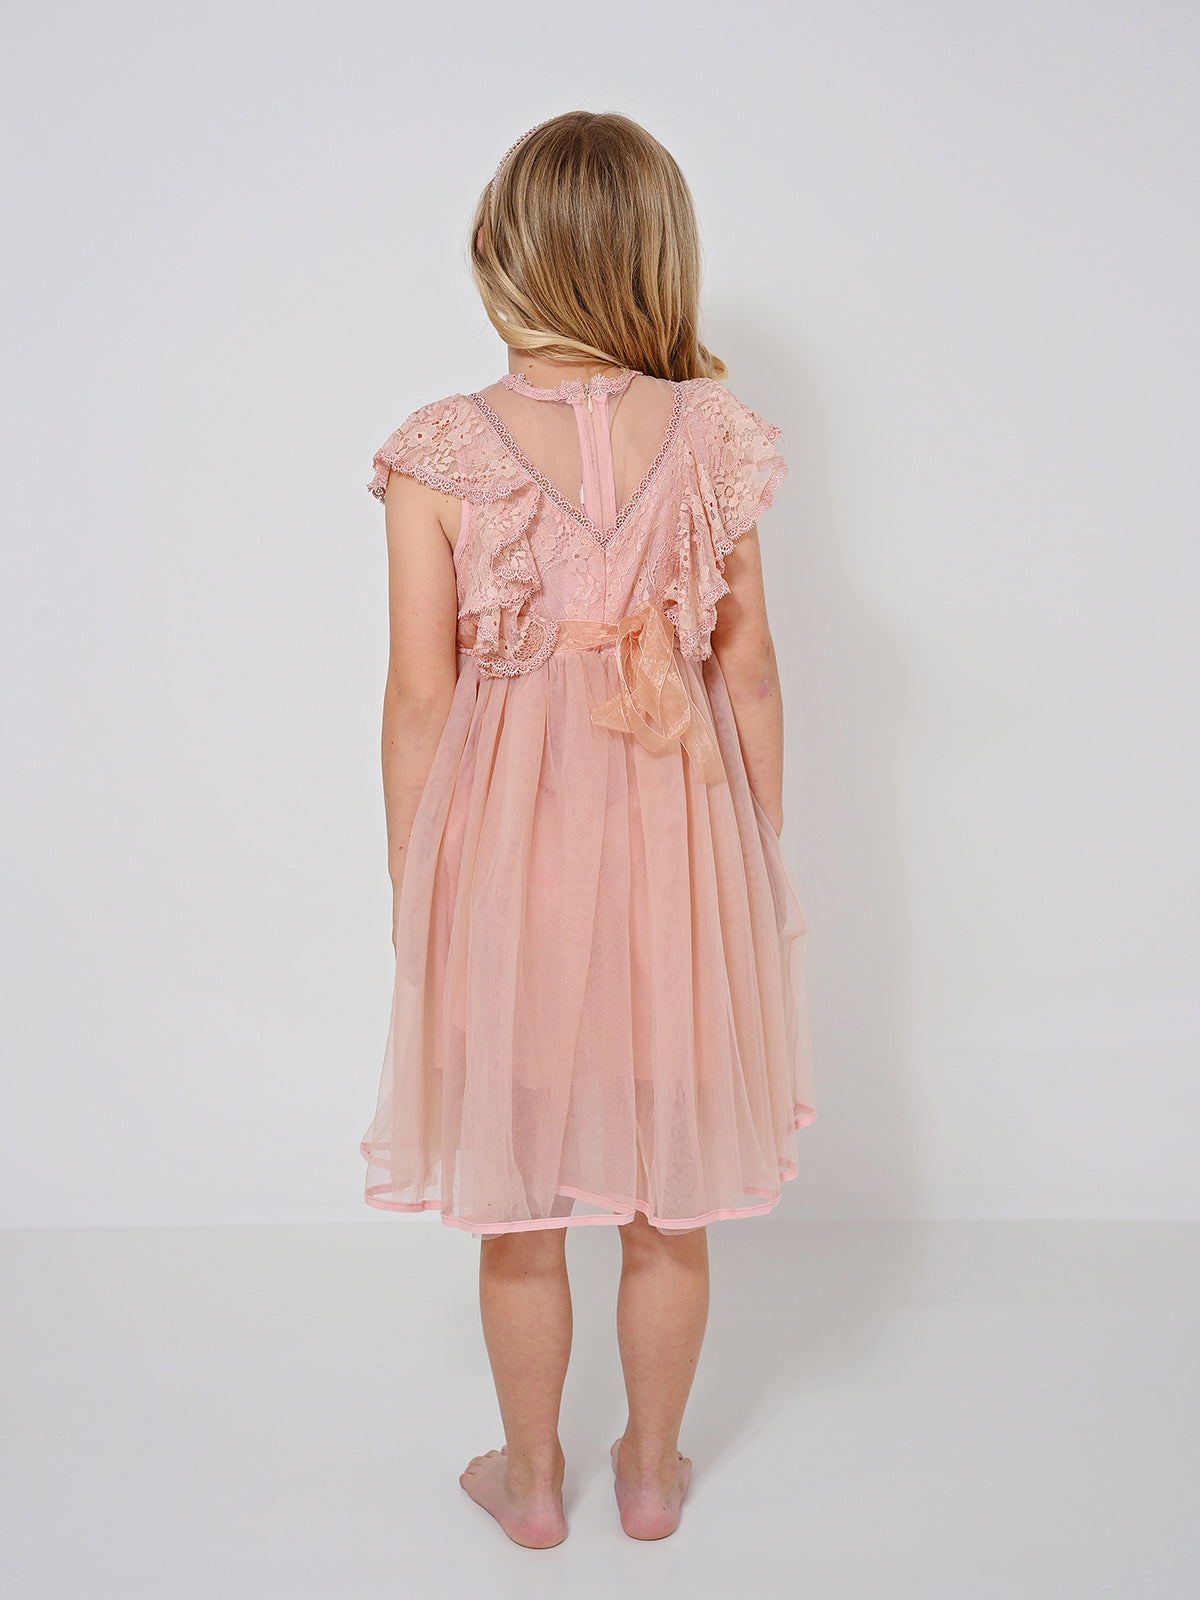 שמלה שושבינה אמילי ורודה / ילדות- Almonet|עלמונת